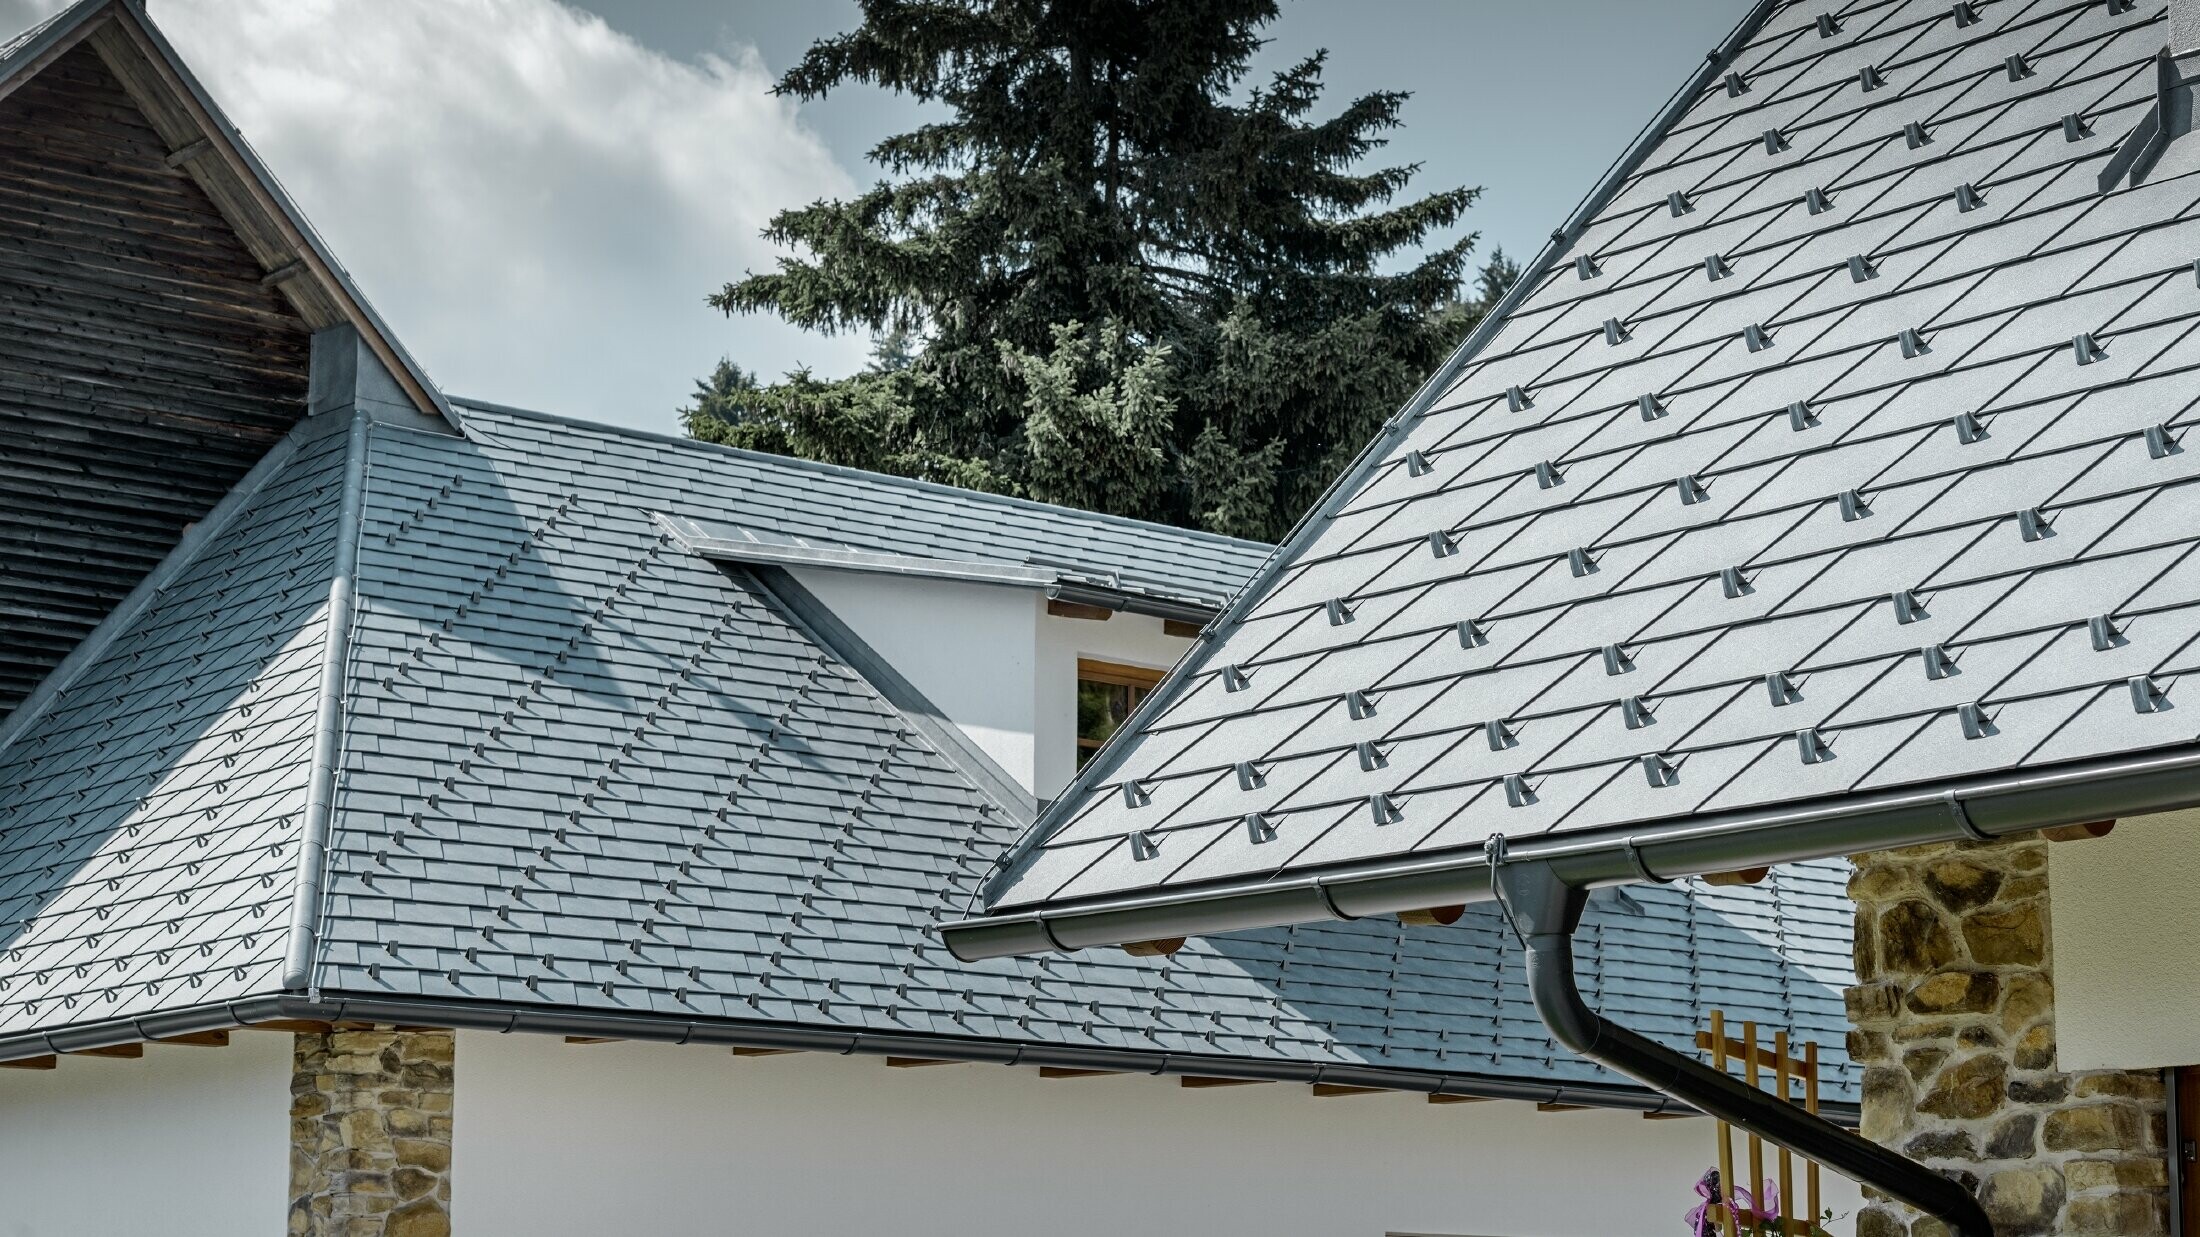 Detal aluminiowego krycia dachu PREFA, dachówka łupkowa w kolorze szarym kamiennym z aluminiową rynną dachową PREFA w kolorze antracytowym; w tle jest widoczna lukarna ciągniona z dachem na rąbek stojący. Elewacja jest biała z osadzonymi elementami kamiennymi.